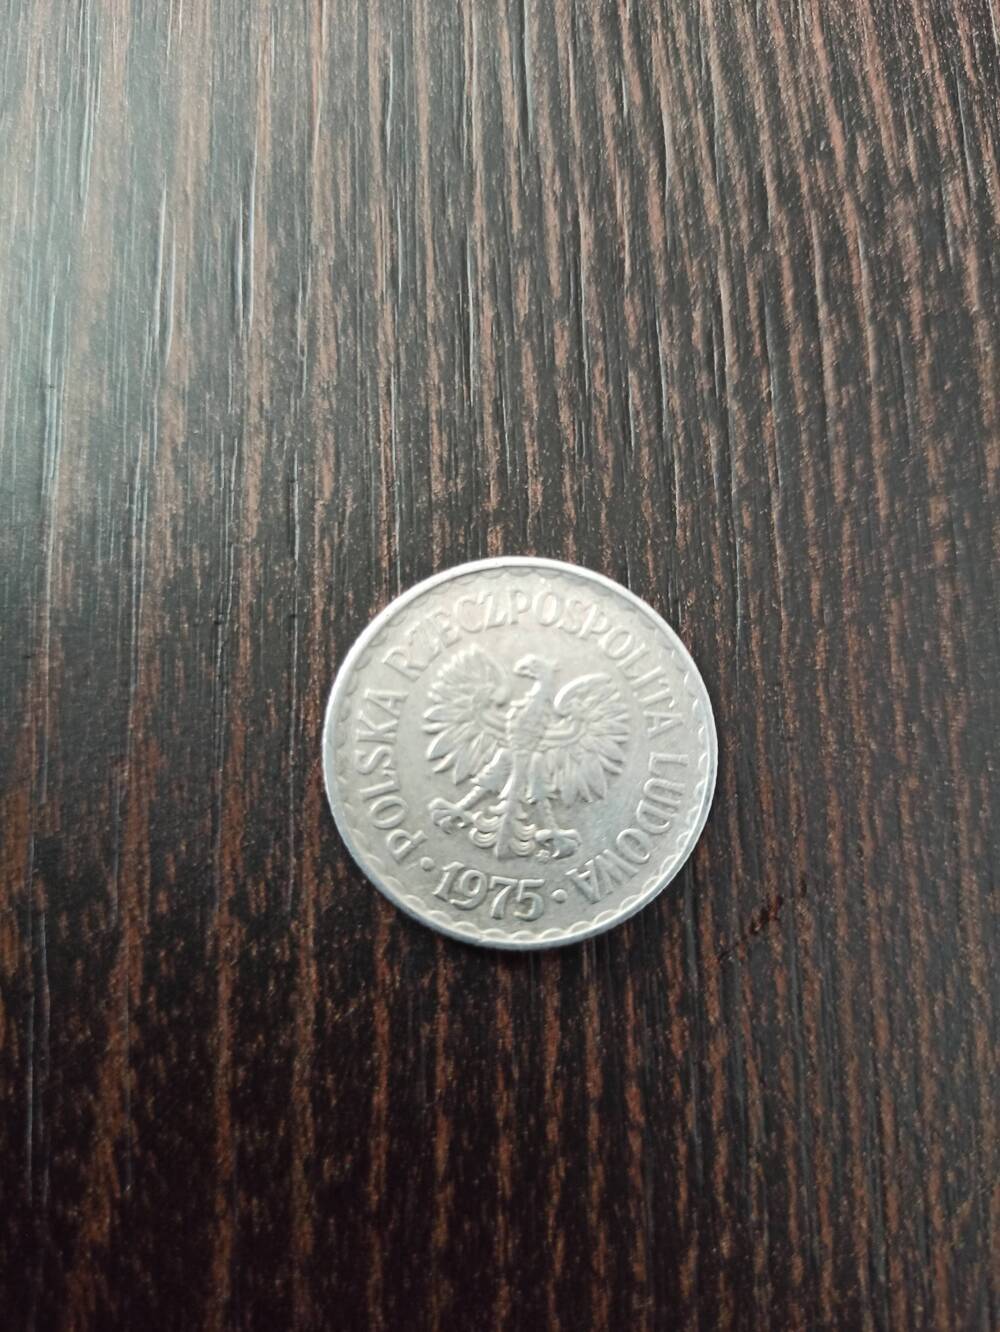 Нумизматика. Монета Польши достоинством  1 злотый 1975 года. Лицевая сторона – в центре «1 злотый» по кругу венок. Гербовая сторона – герб.